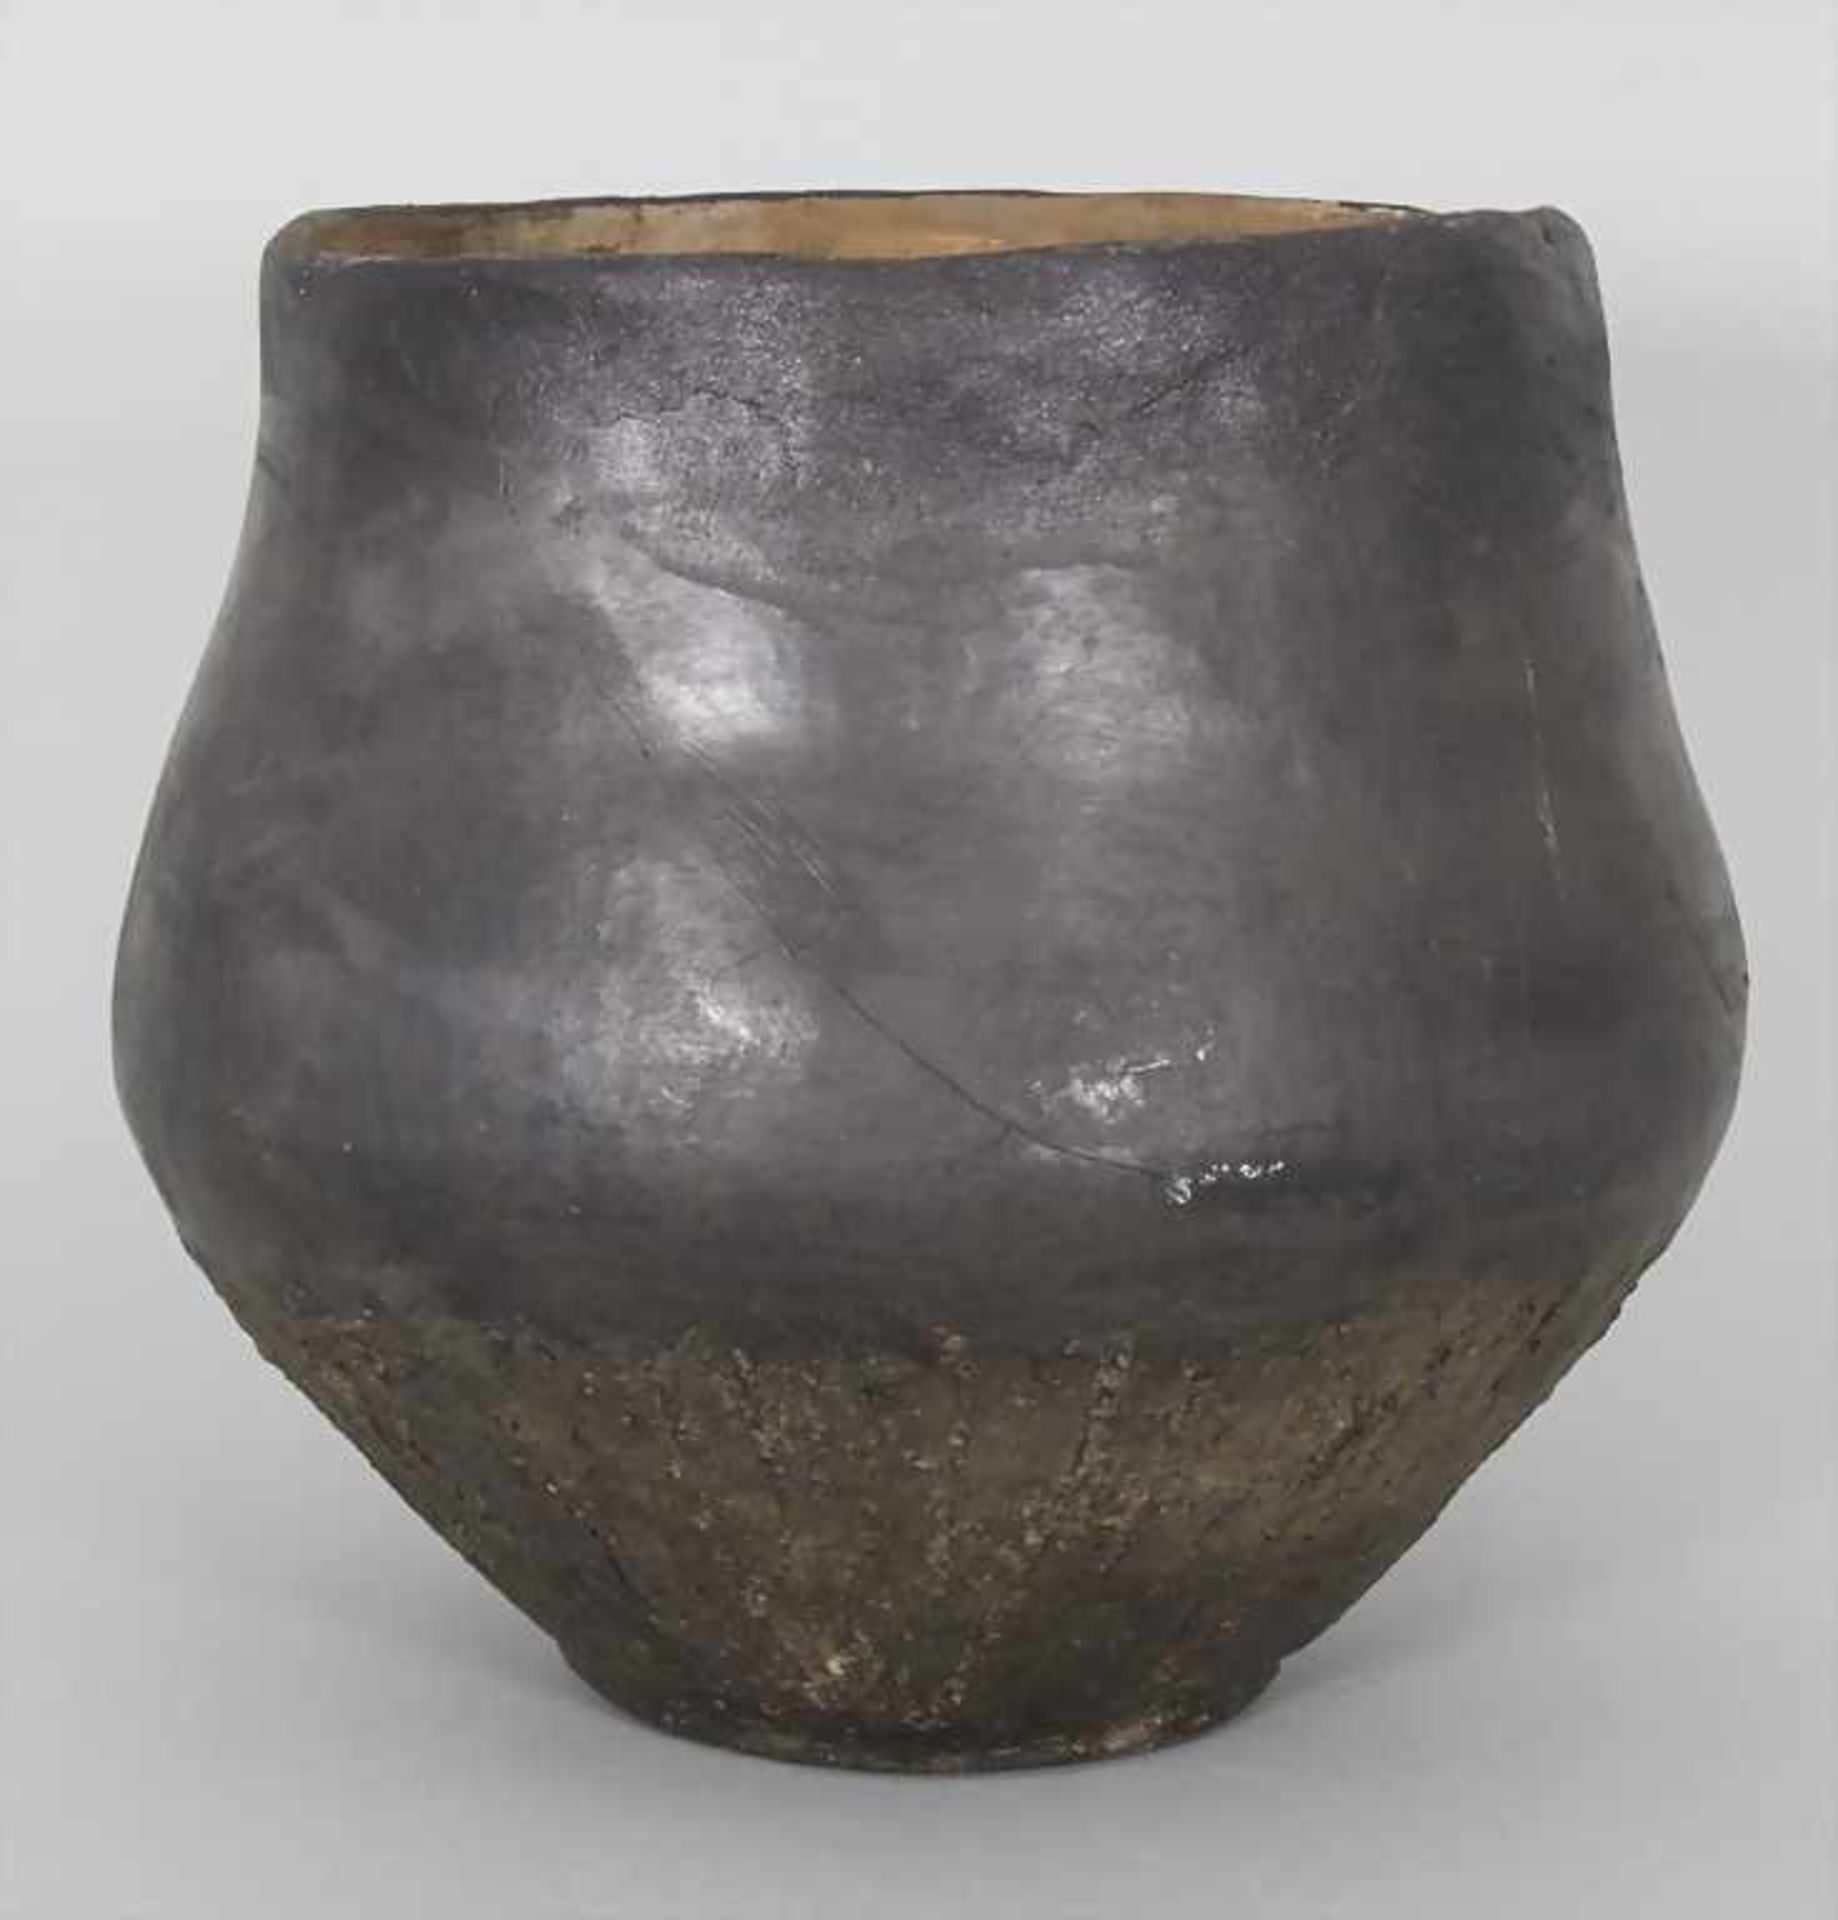 Bronzezeitliches Keramik-Gefäß / A Bronze Age ceramic vessel, Lausitzer Kultur, 9. - 6. Jh. v. Chr. - Image 3 of 6